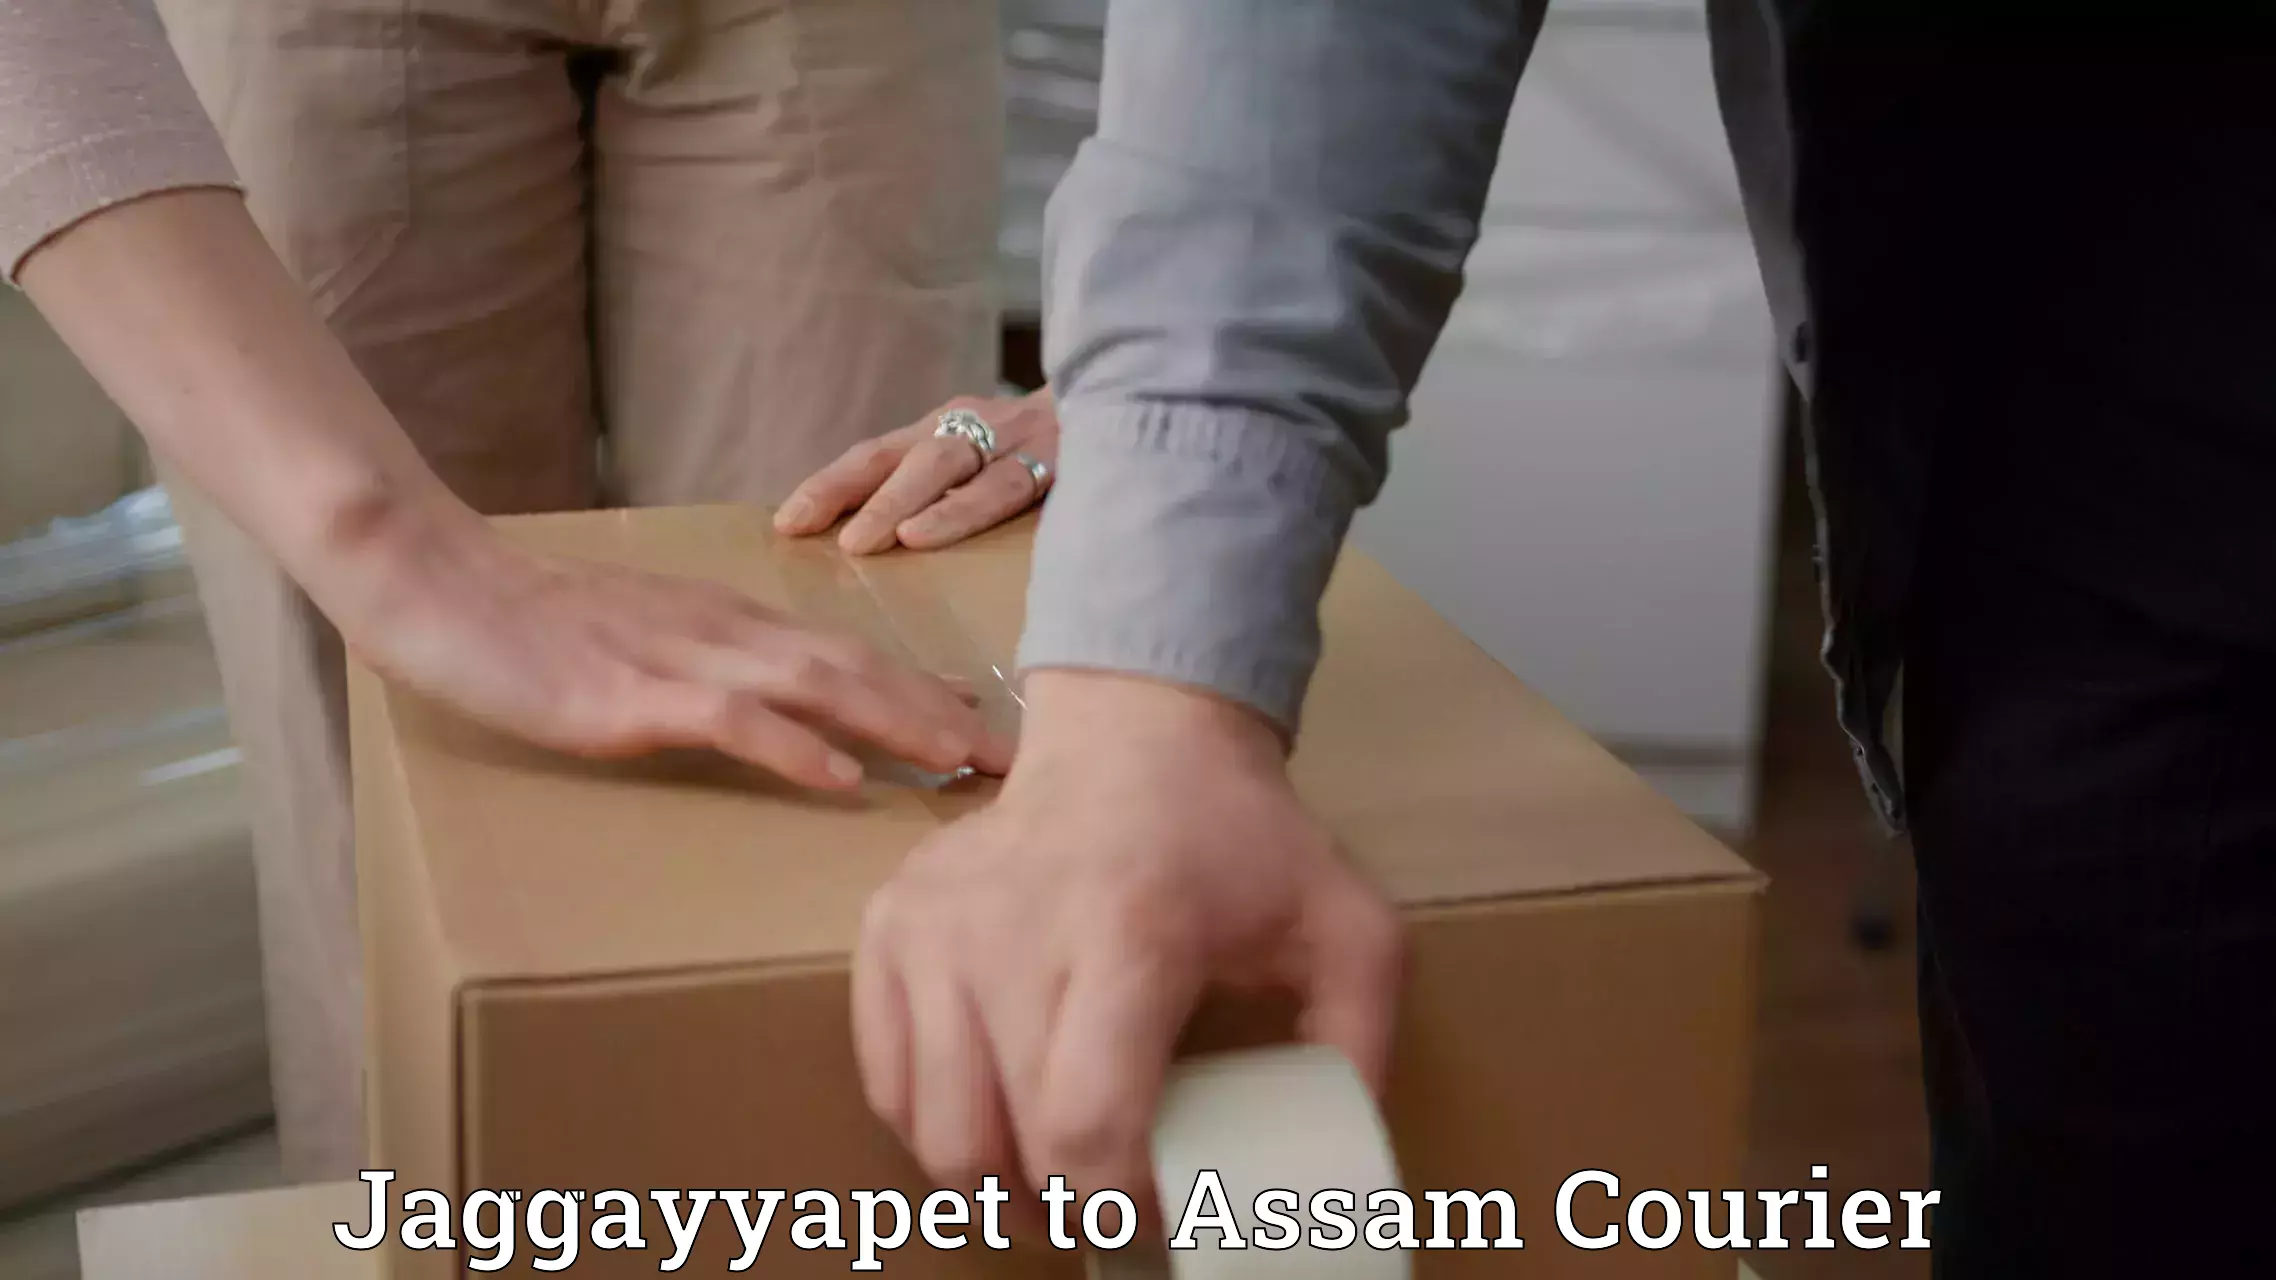 Customizable delivery plans Jaggayyapet to Dalgaon